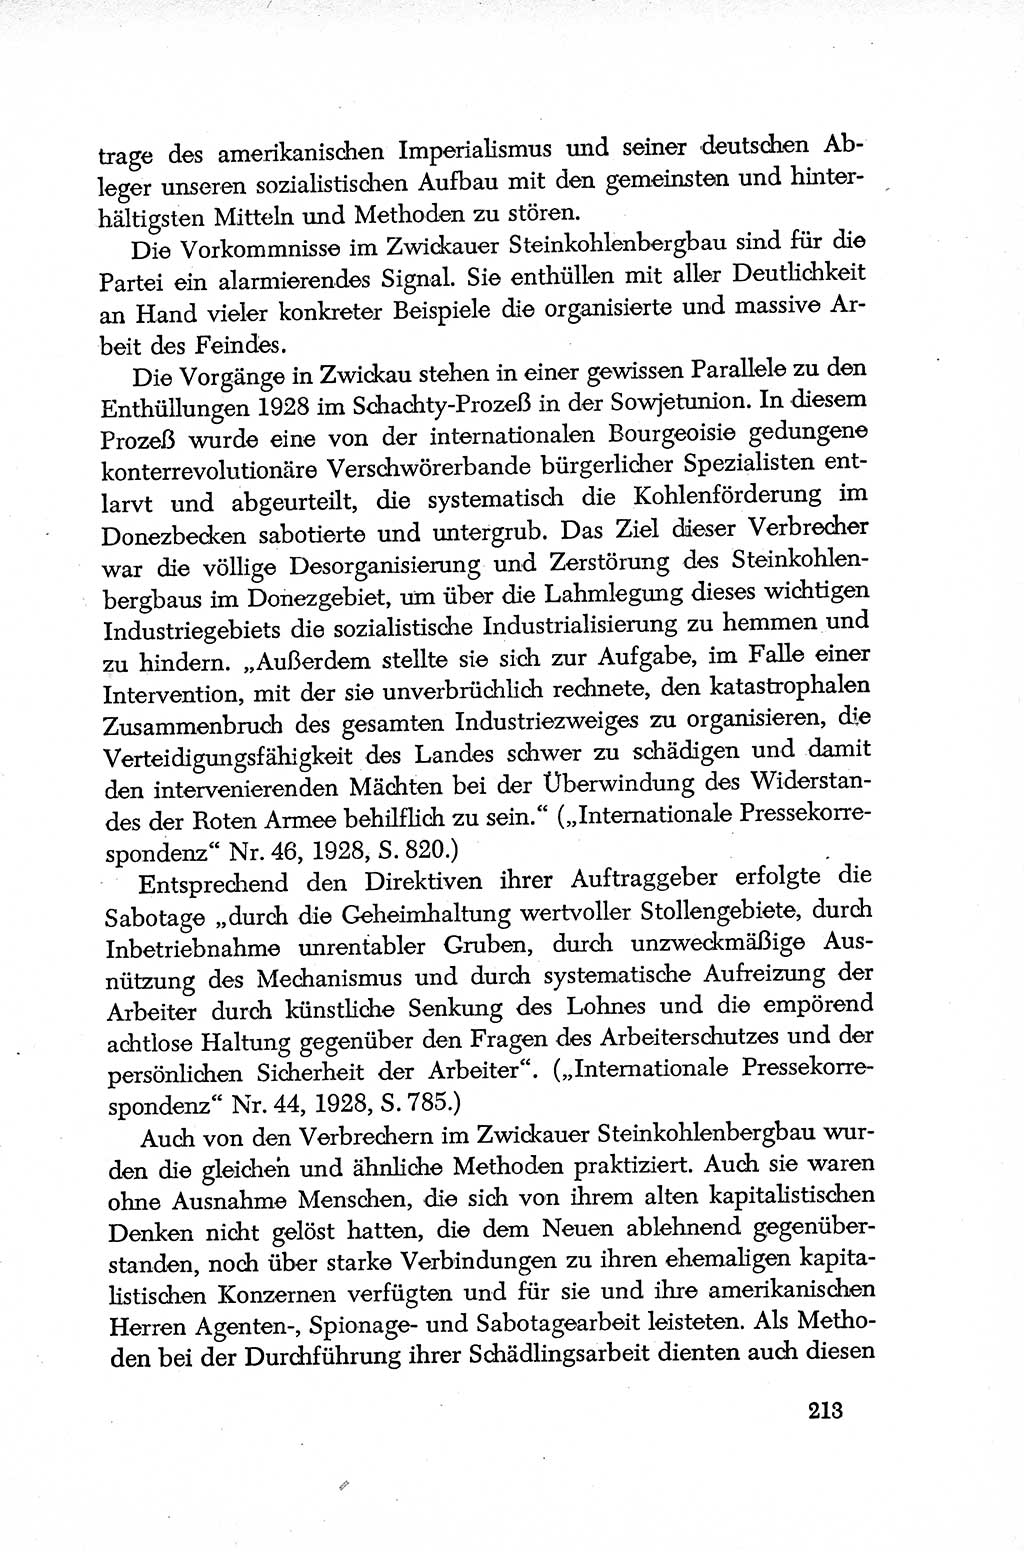 Dokumente der Sozialistischen Einheitspartei Deutschlands (SED) [Deutsche Demokratische Republik (DDR)] 1952-1953, Seite 213 (Dok. SED DDR 1952-1953, S. 213)